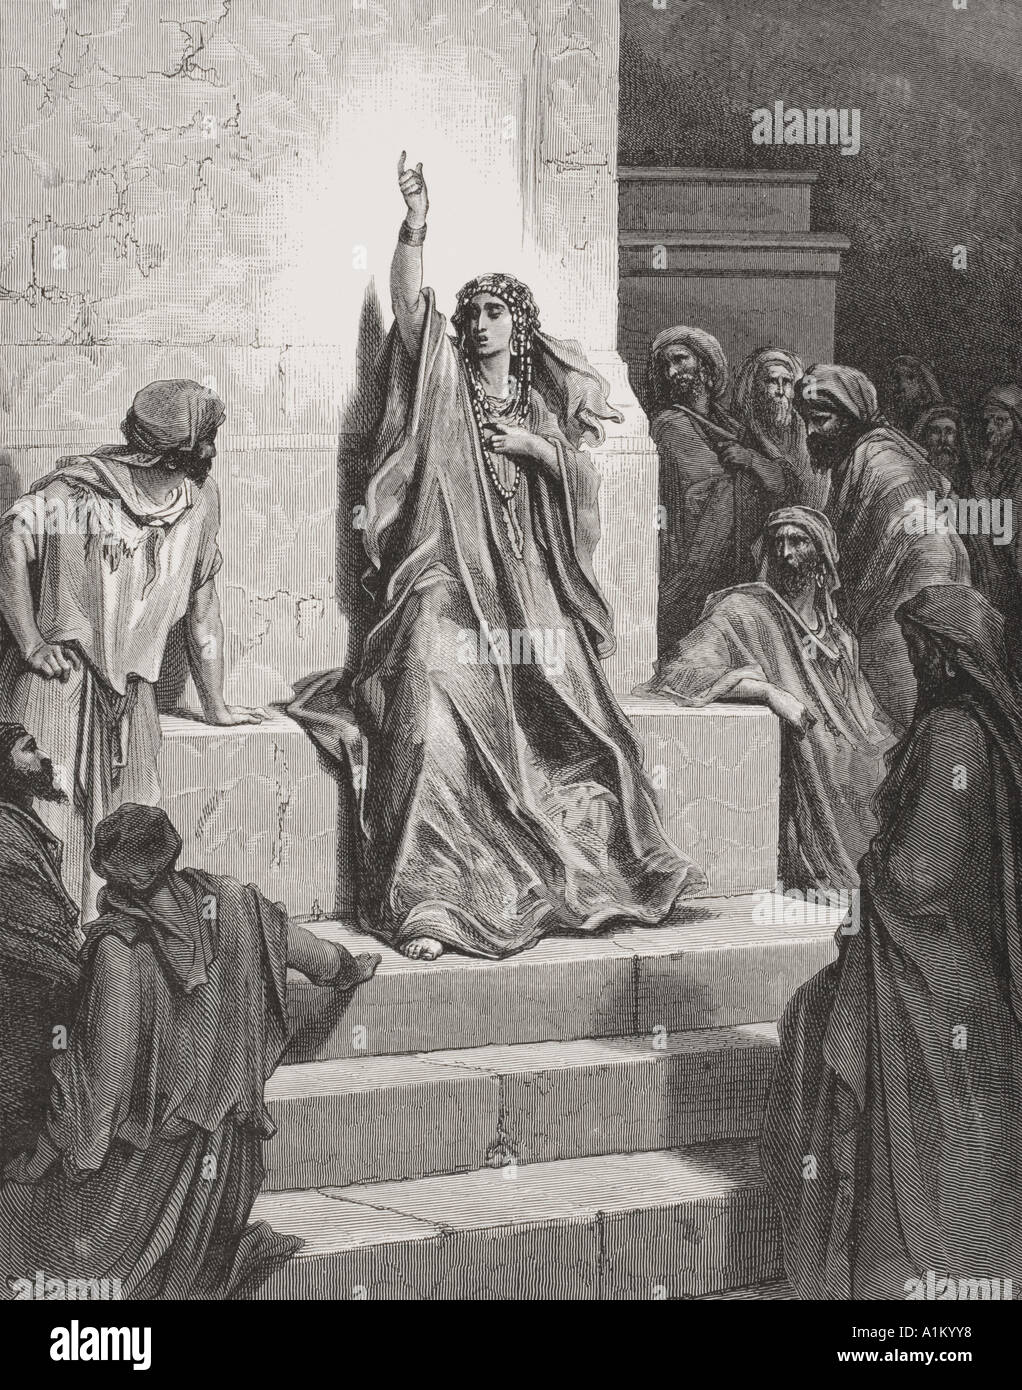 Gravure de la Dore illustrant la Bible juges v 1 et 2. Deborah par Gustave Dore, 1832 - 1883. Artiste et illustrateur français. Banque D'Images